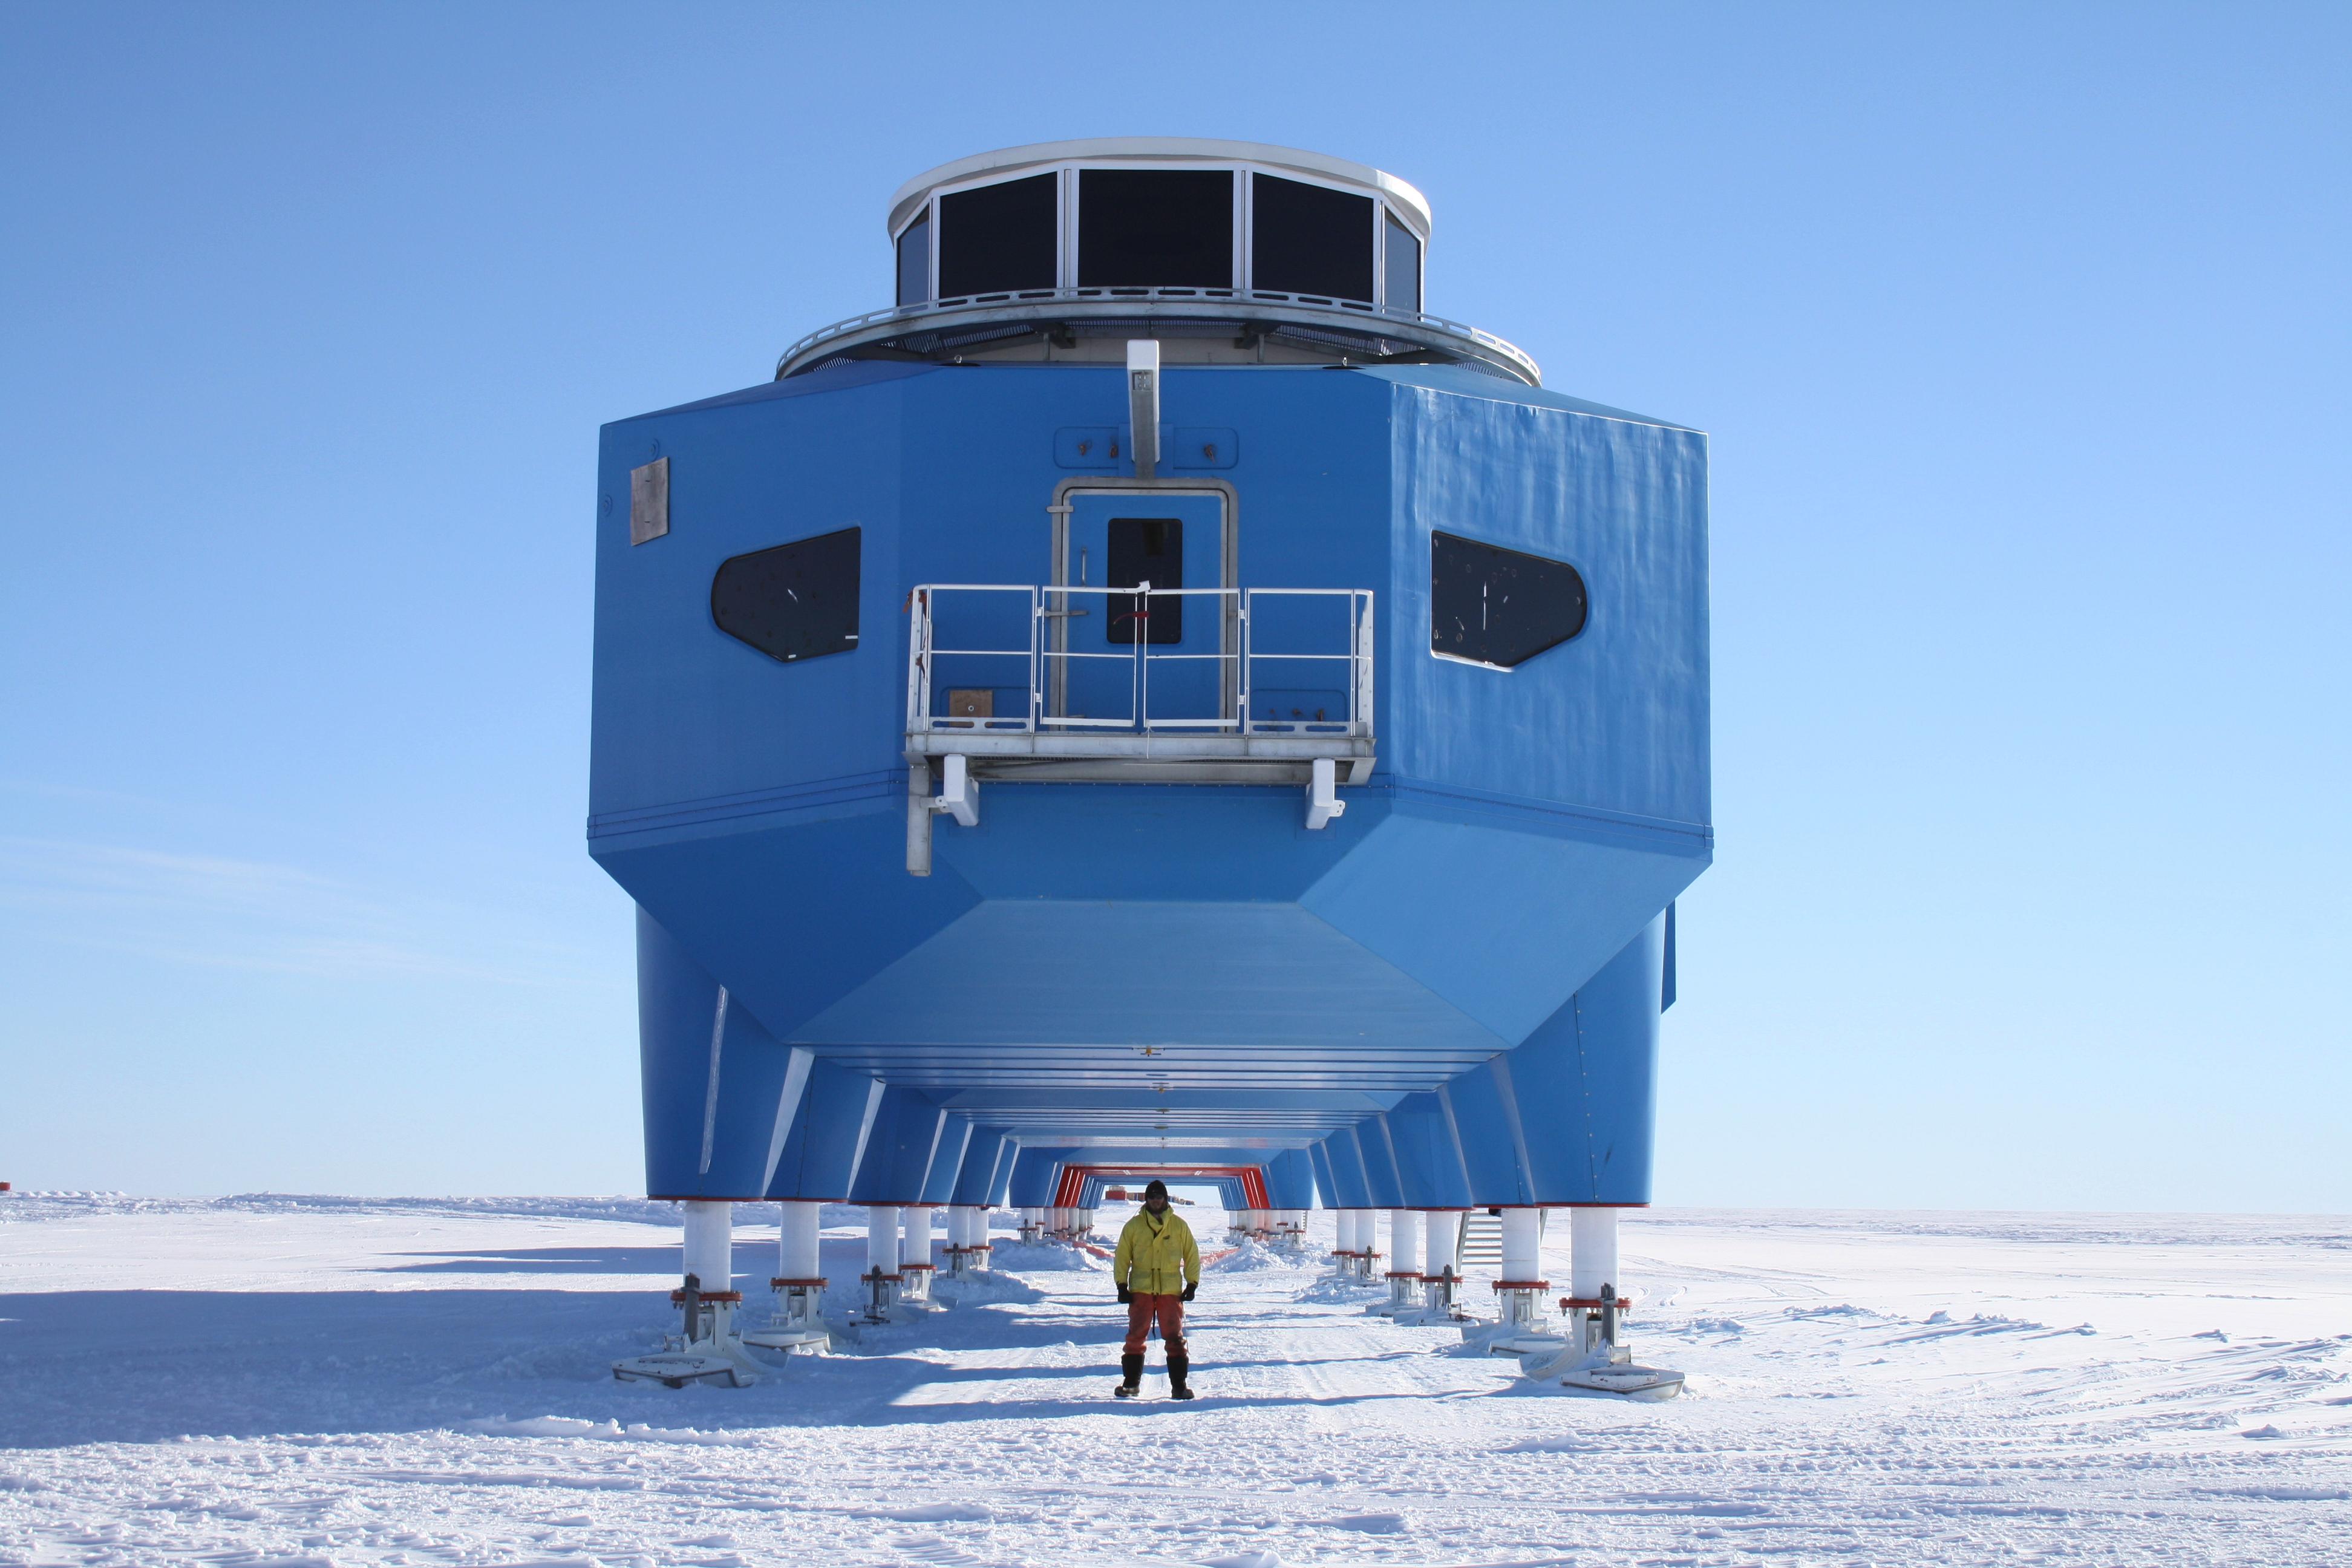 Арктический и антарктический научно исследовательский. Арктическая станция Halley. Британская антарктическая станция Halley vi. Станция Халли в Антарктиде. Станция Helley 5 в Антарктиде.